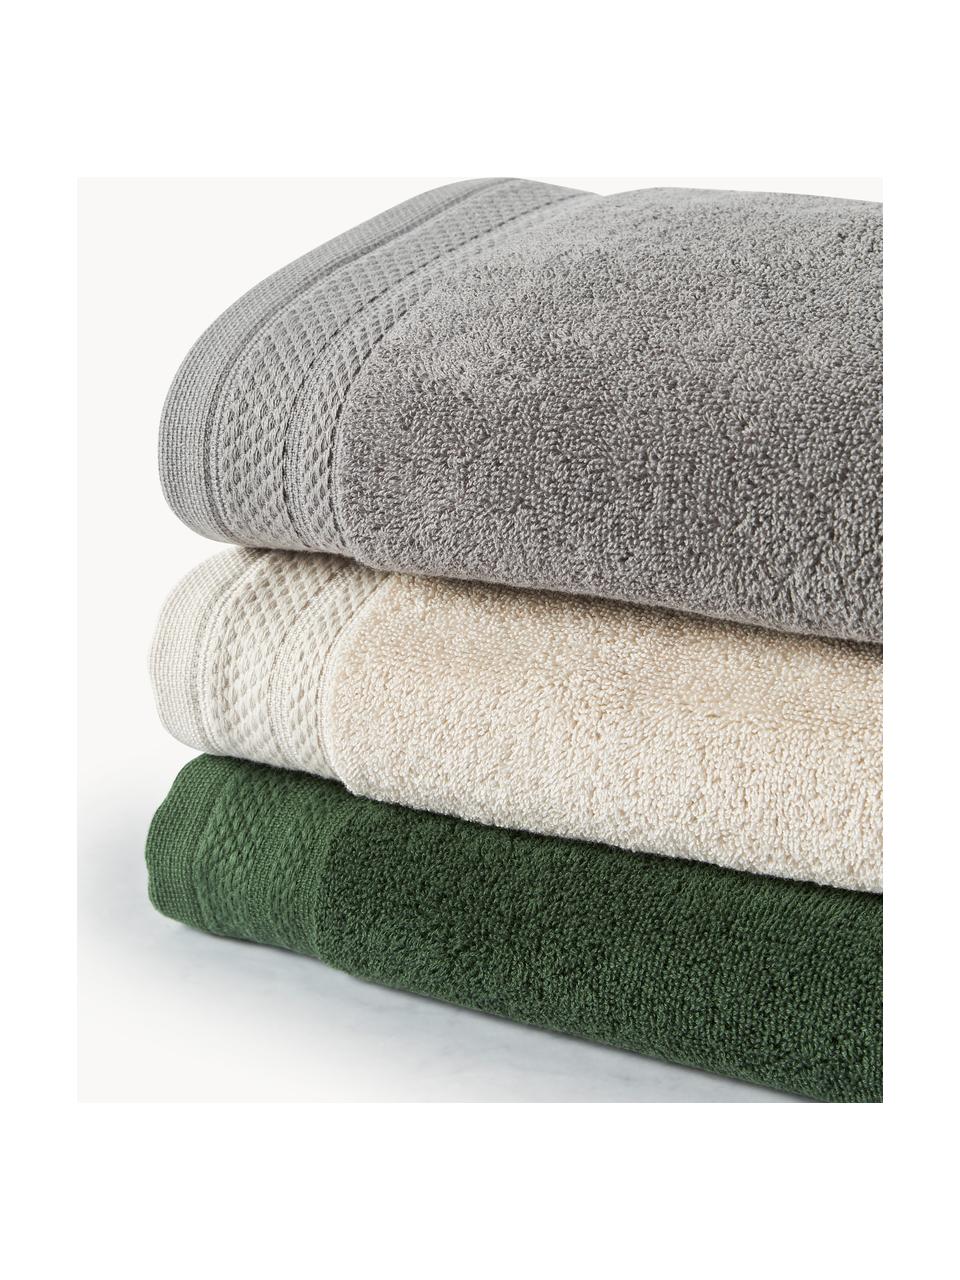 Set di asciugamani in cotone organico Premium, varie misure, 100% cotone organico certificato GOTS (da GCL International, GCL-300517).
Qualità pesante, 600 g/m², Grigio scuro, Set di 4 (asciugamano e telo da bagno)